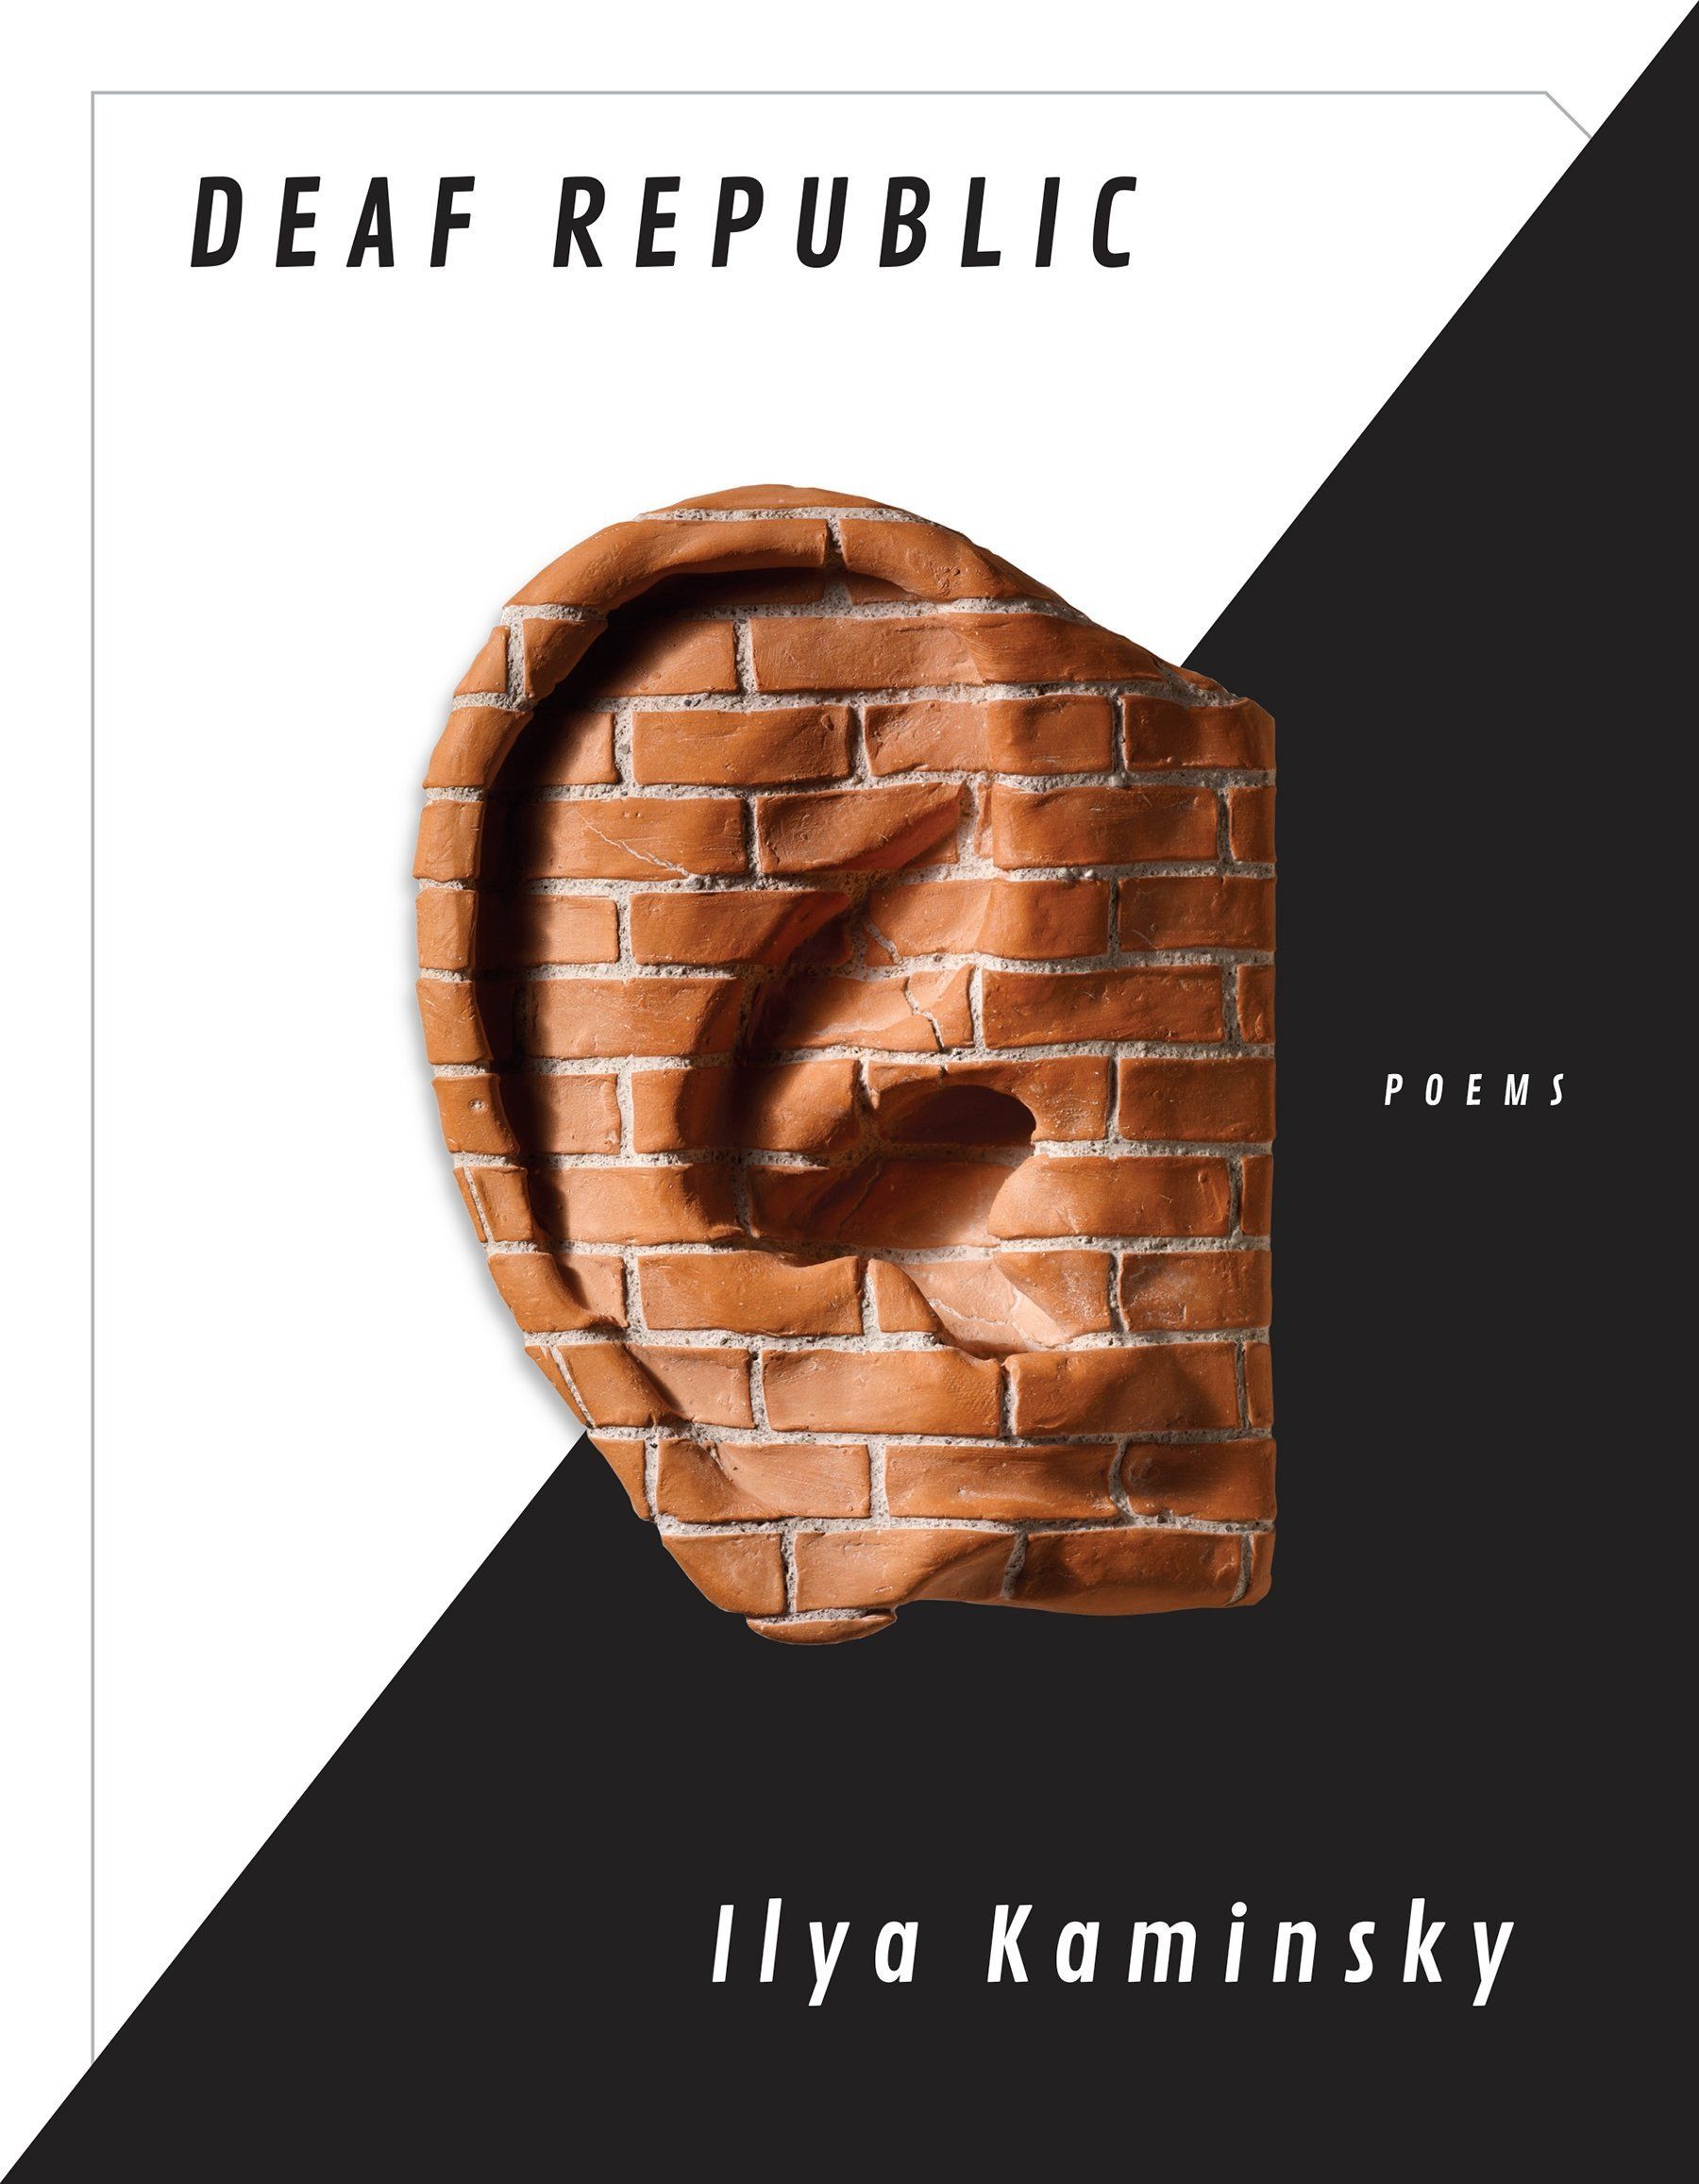 Silence That Is Not Silence: On Ilya Kaminsky’s “Deaf Republic”